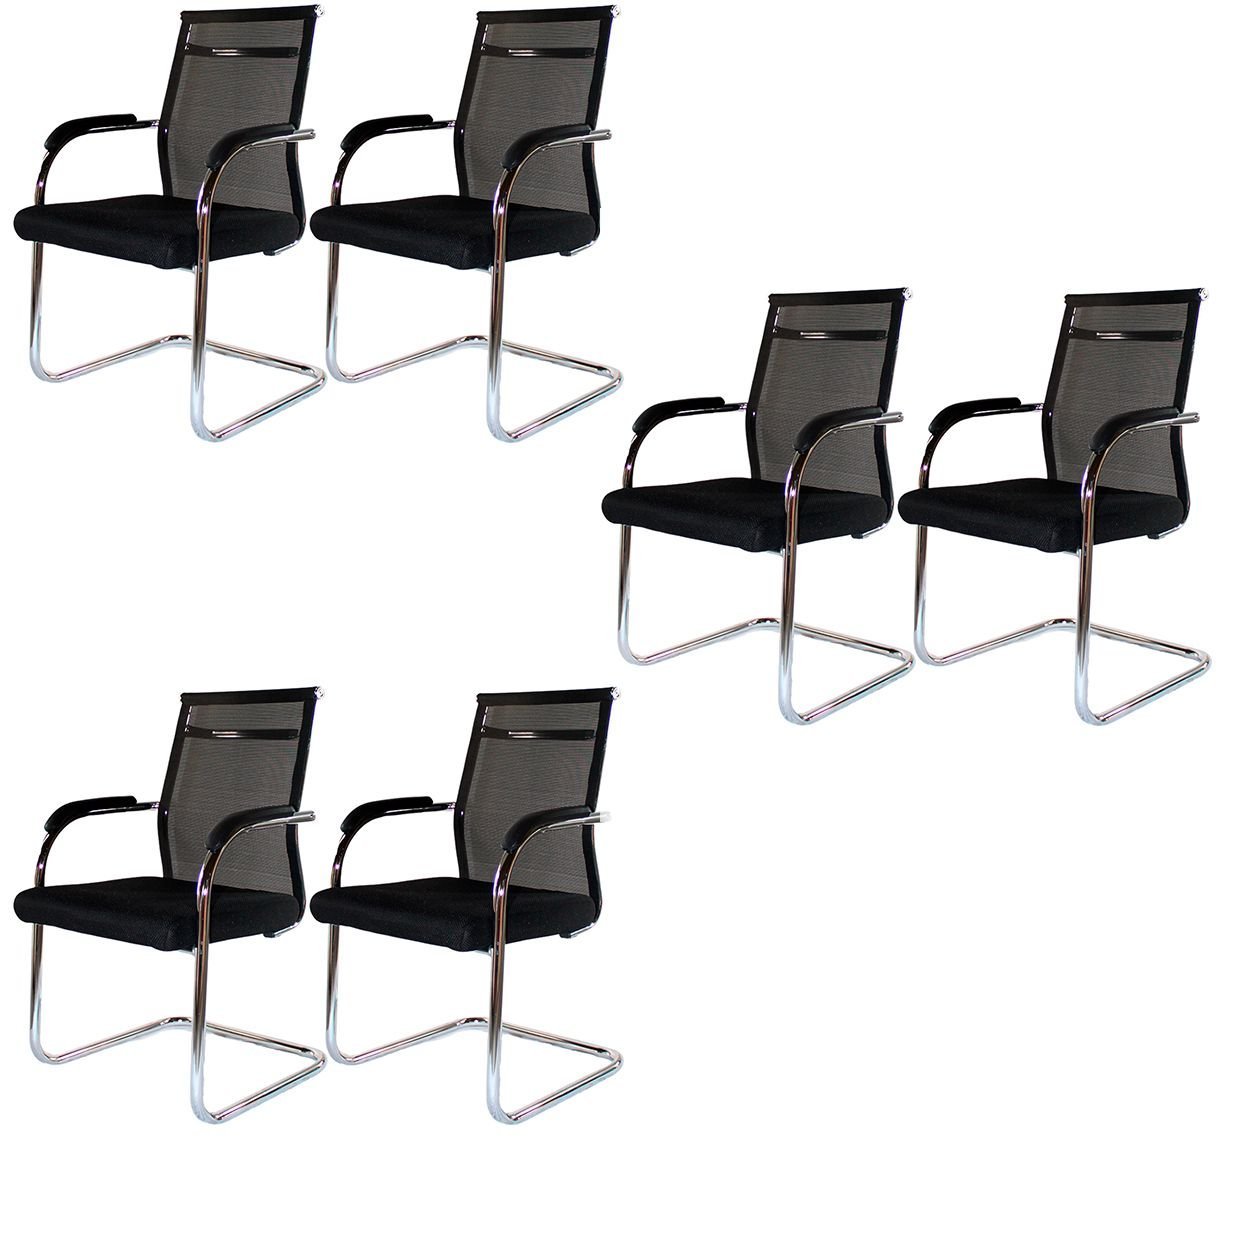 Kit 6 Cadeiras Interlocutor Mesh Fixa Preta W-122